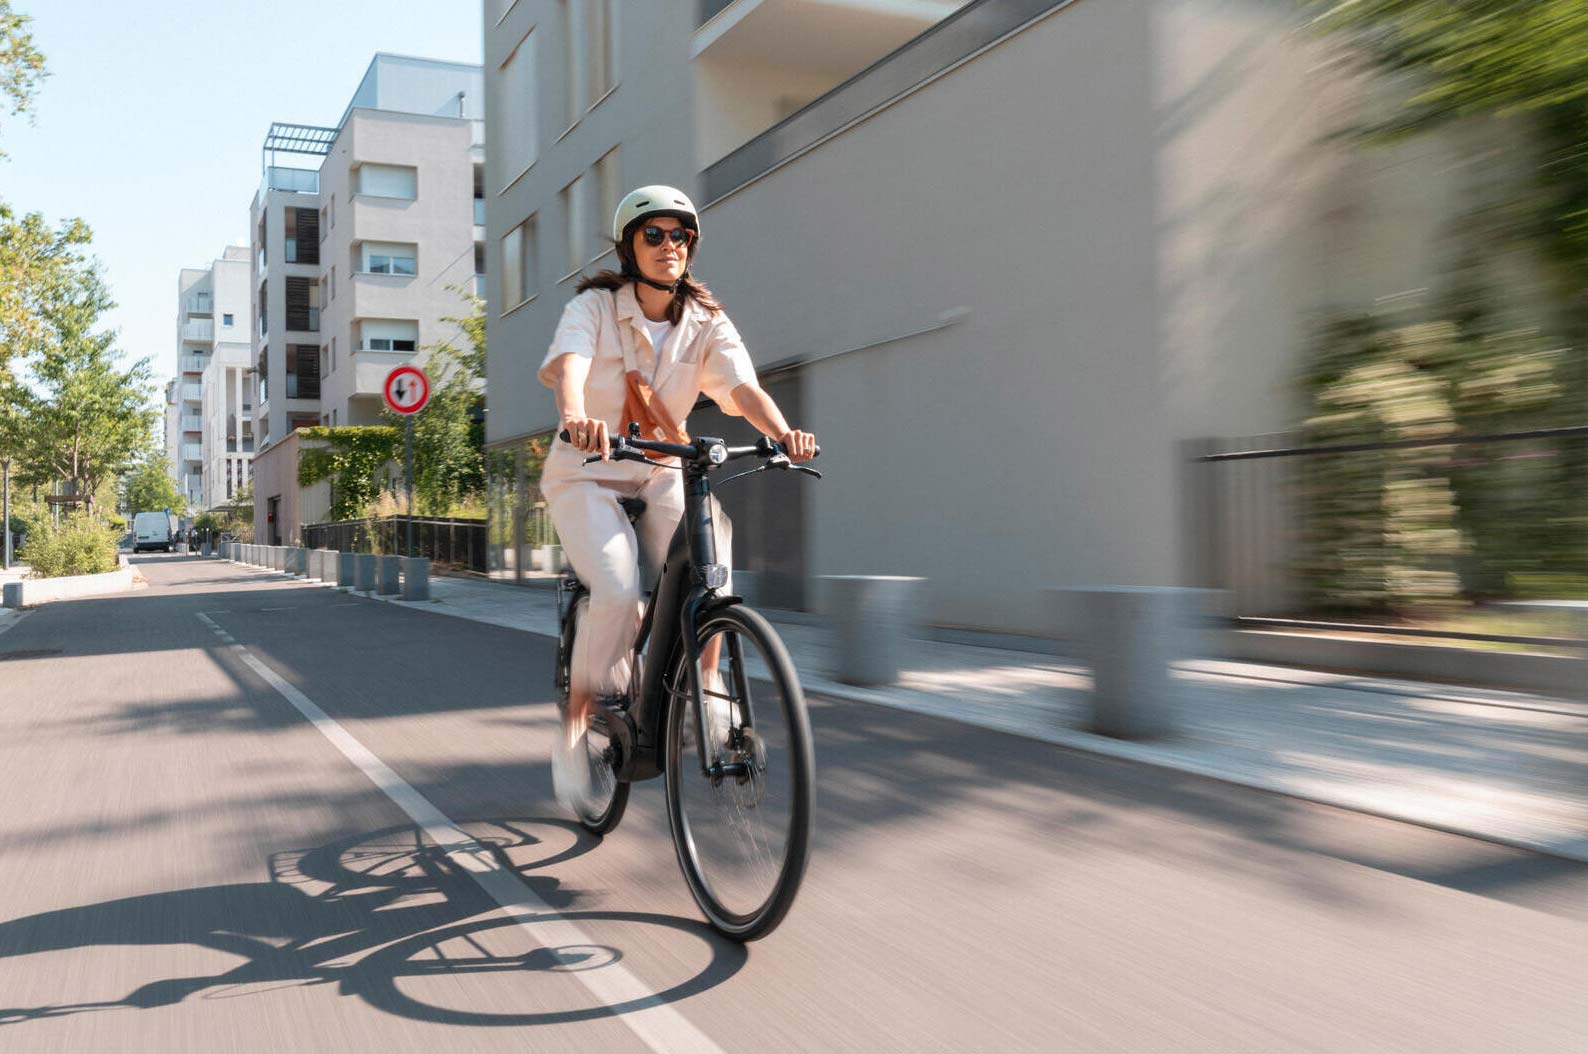 10 choses vraiment utiles à savoir sur les vélos électriques